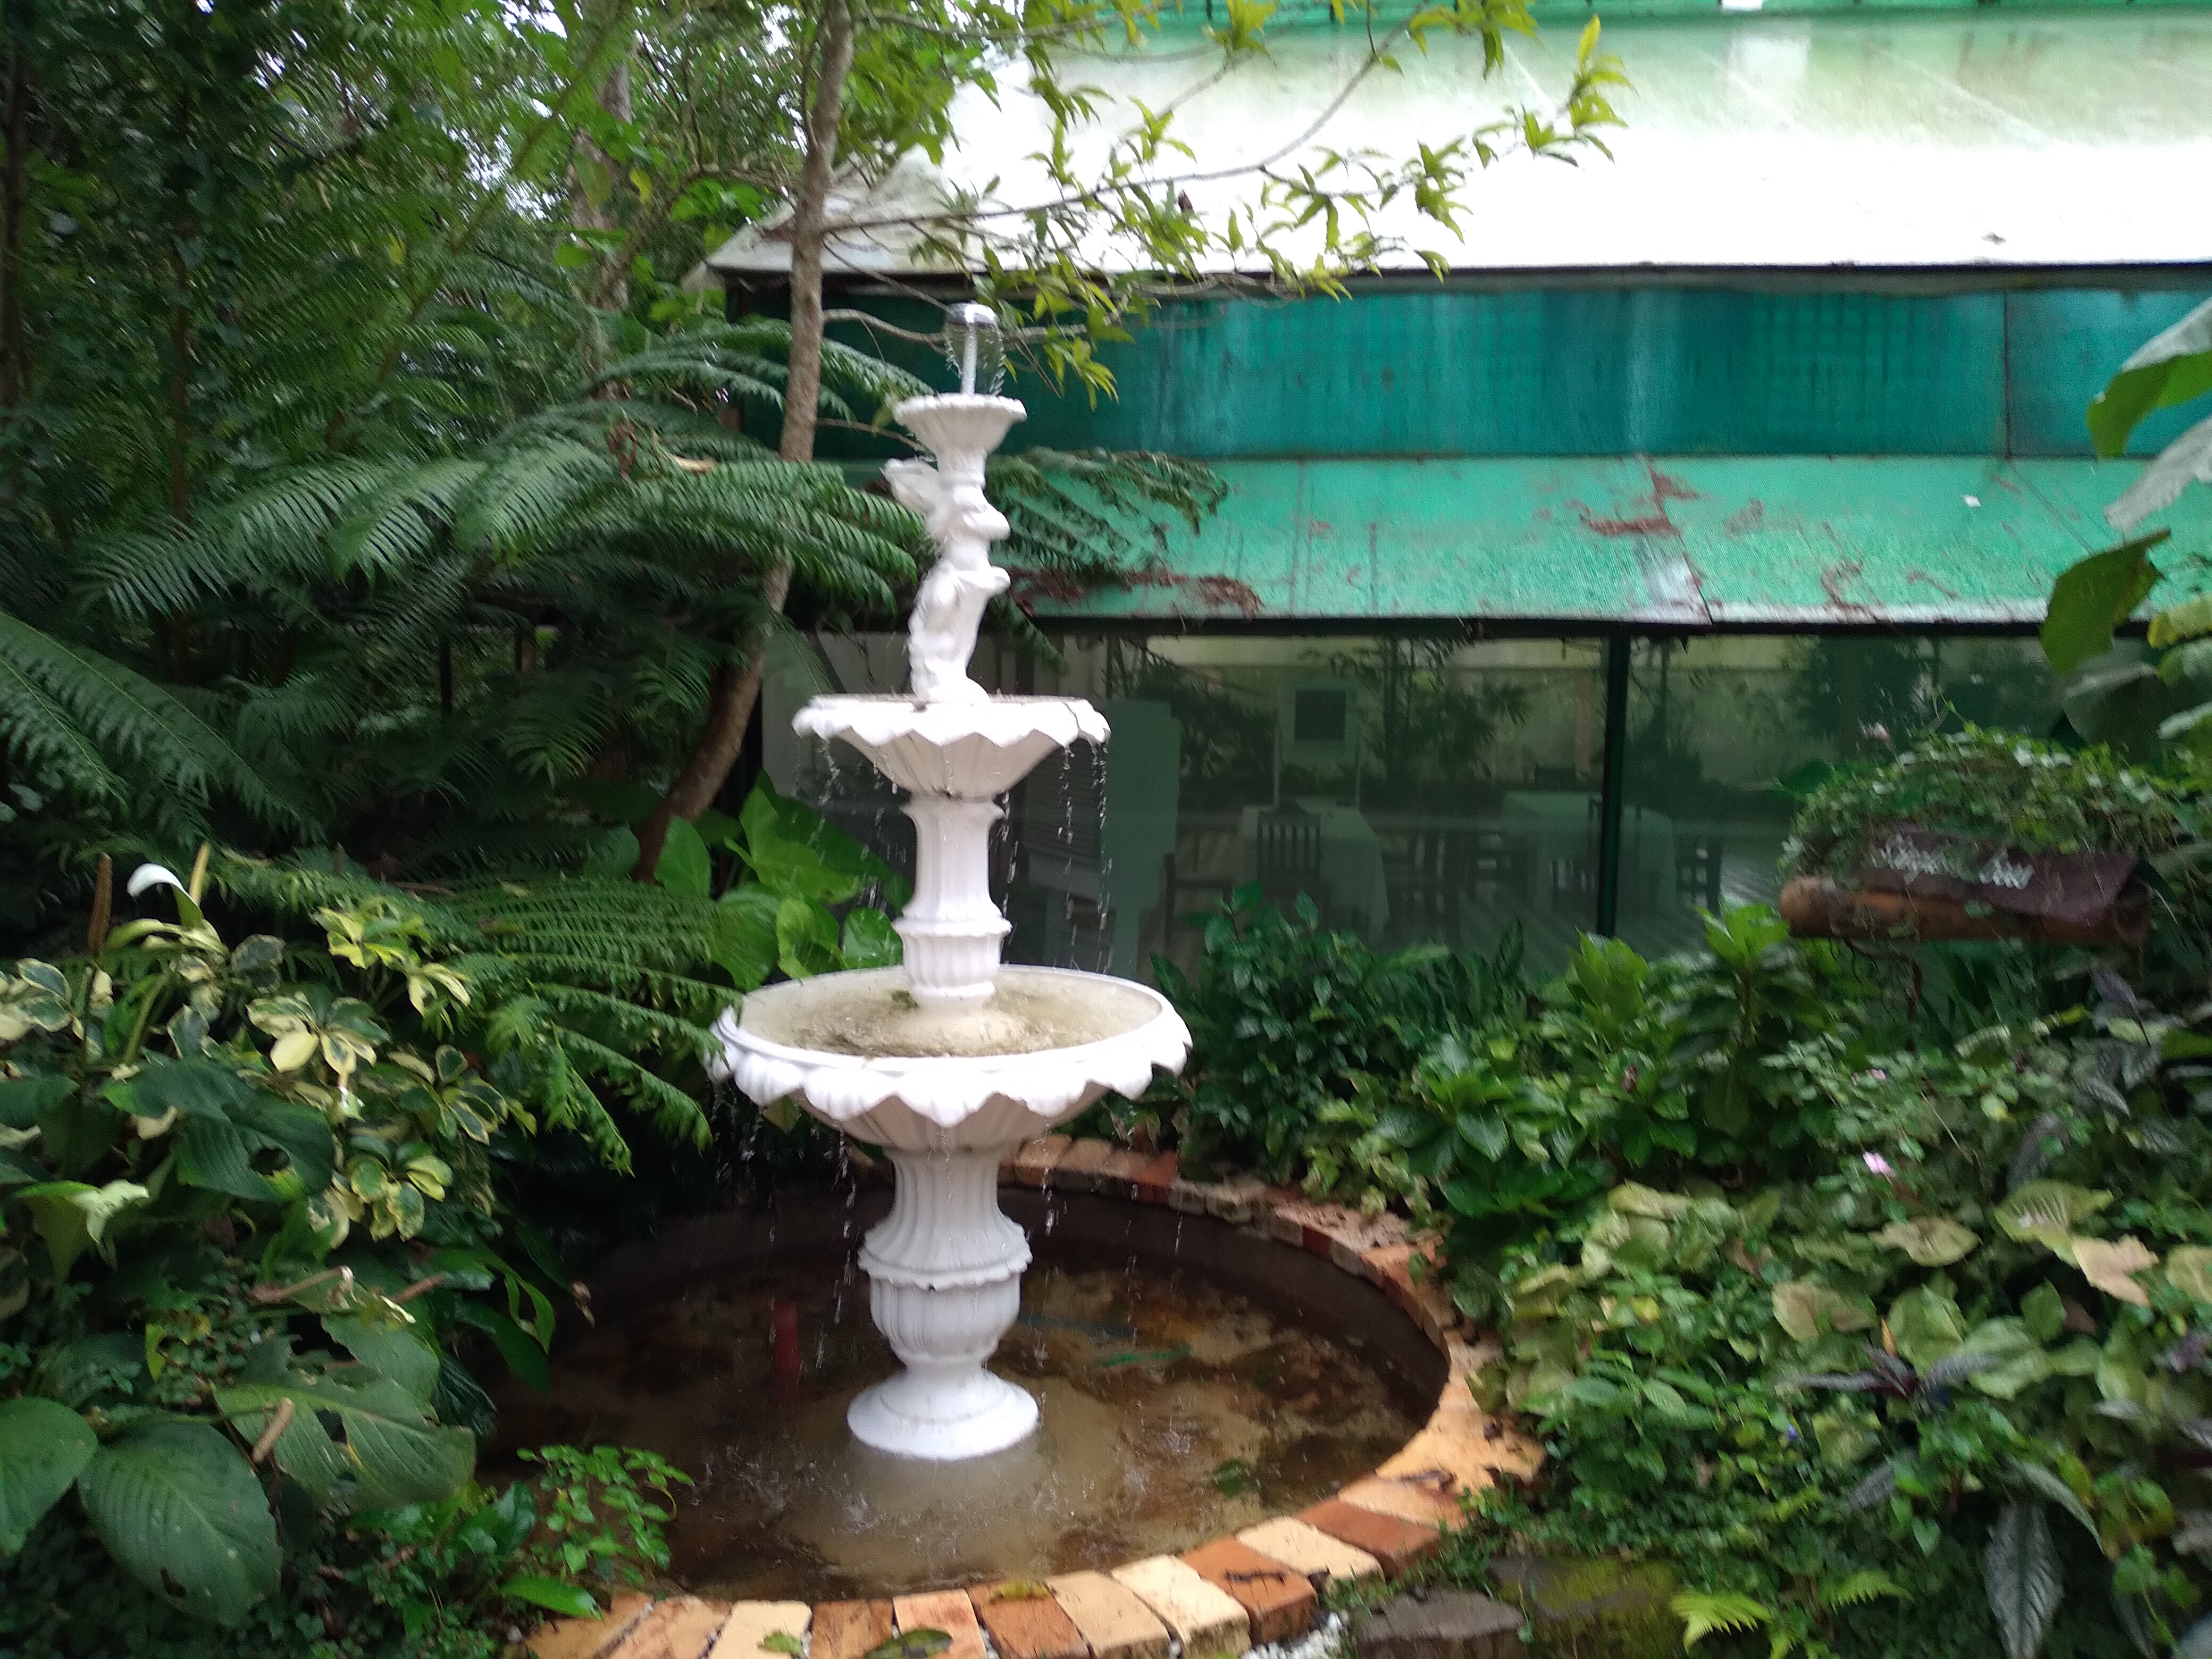 Fountain at Sonya's Garden